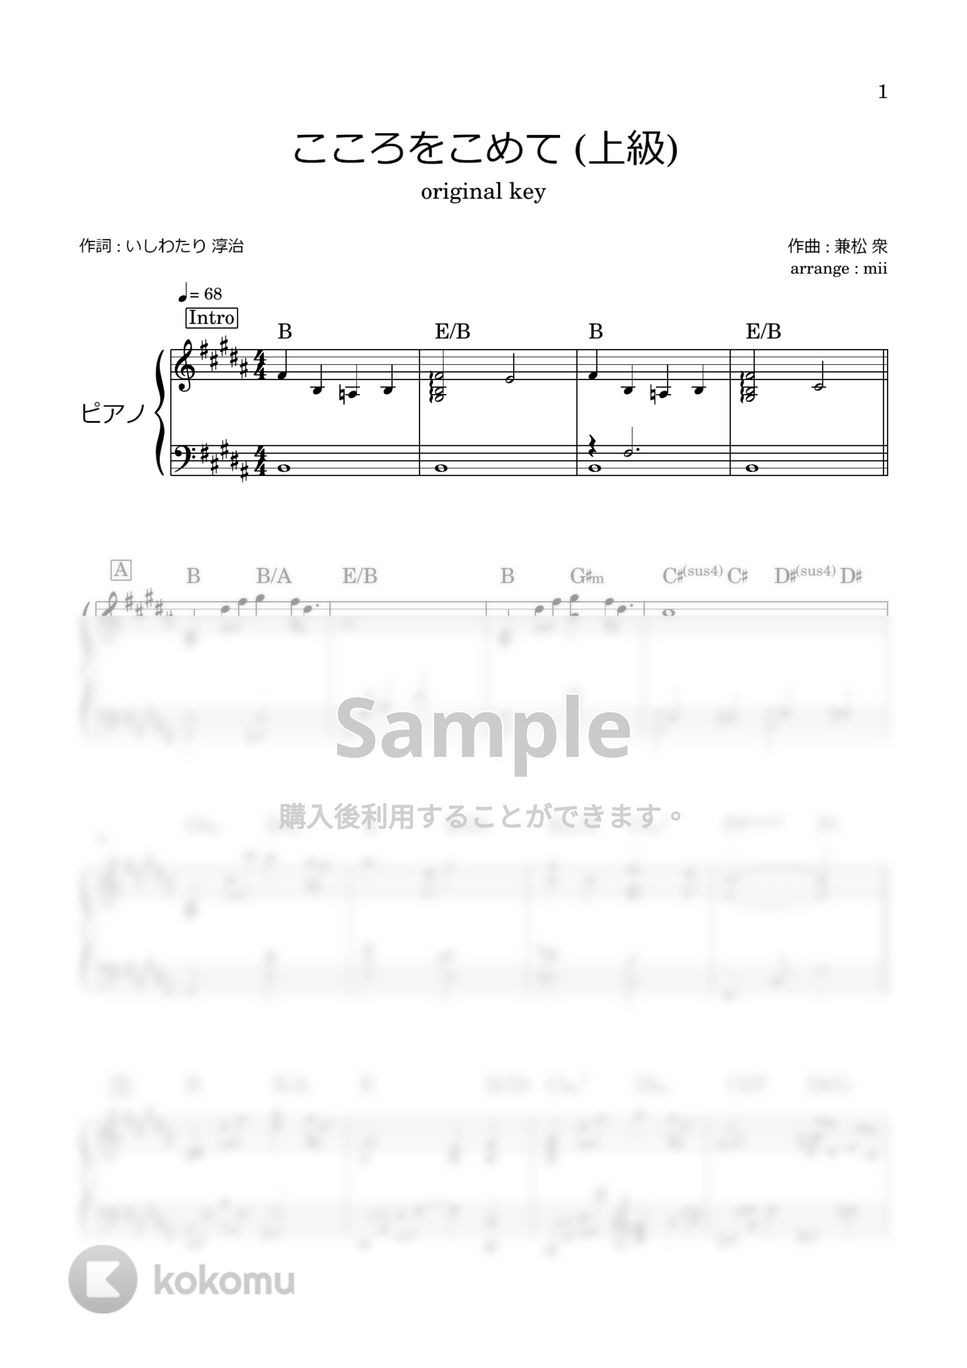 手嶌 葵 - こころをこめて (上級) by miiの楽譜棚